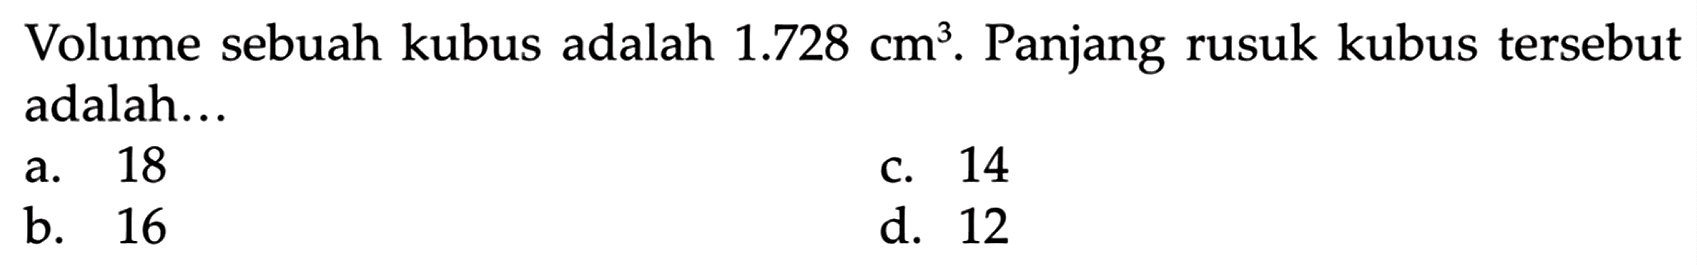 Volume sebuah kubus adalah 1.728 cm^3 . Panjang rusuk kubus tersebut adalah ...